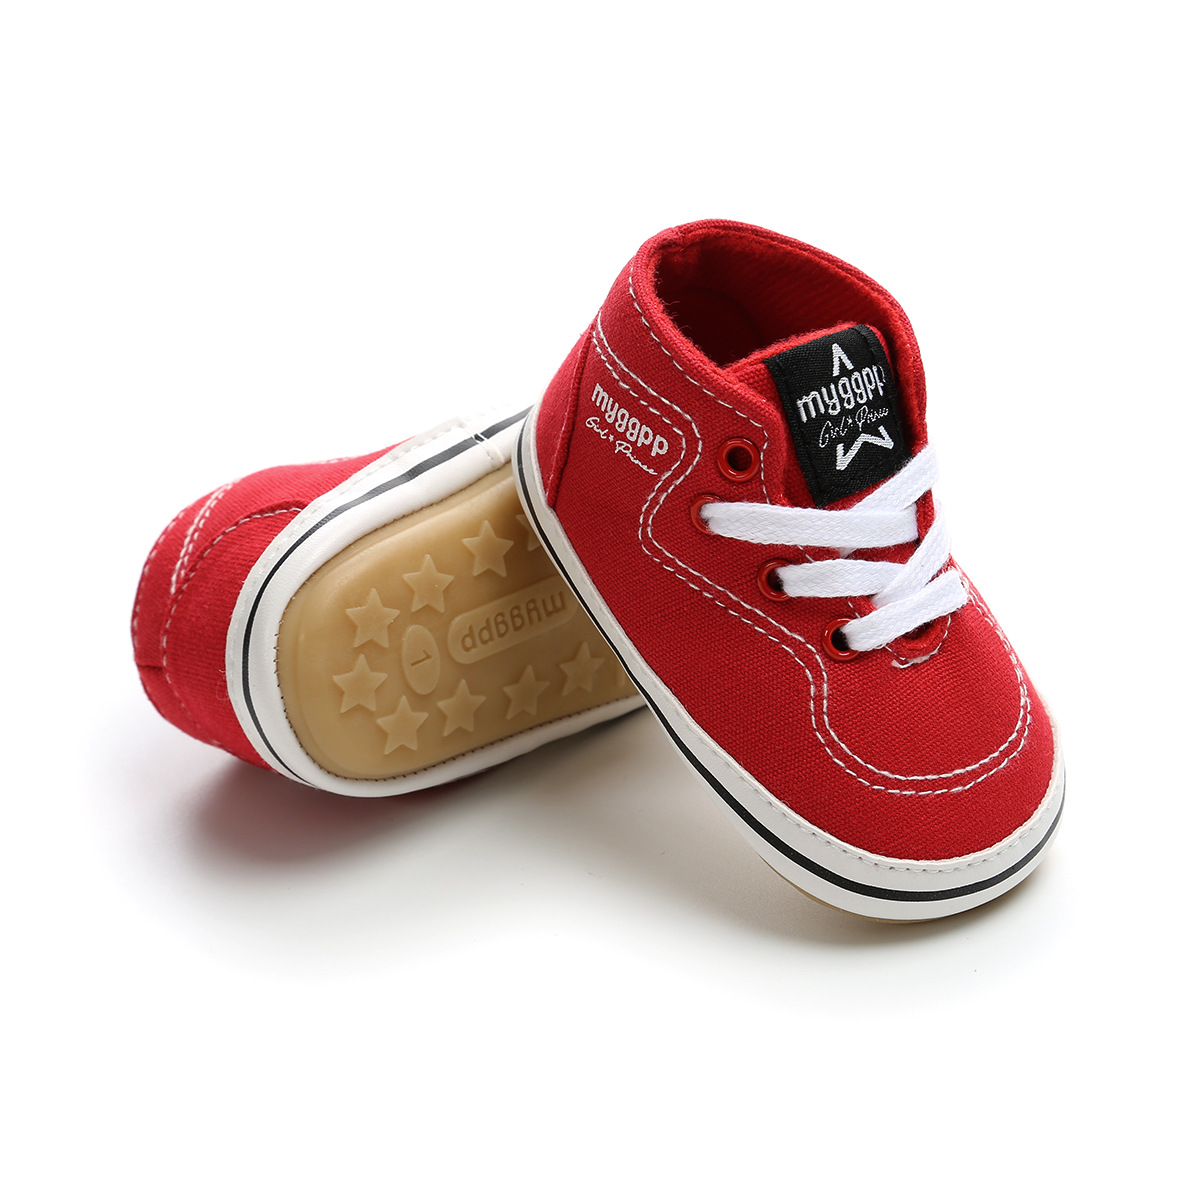 Chaussures bébé en coton - Ref 3436710 Image 198